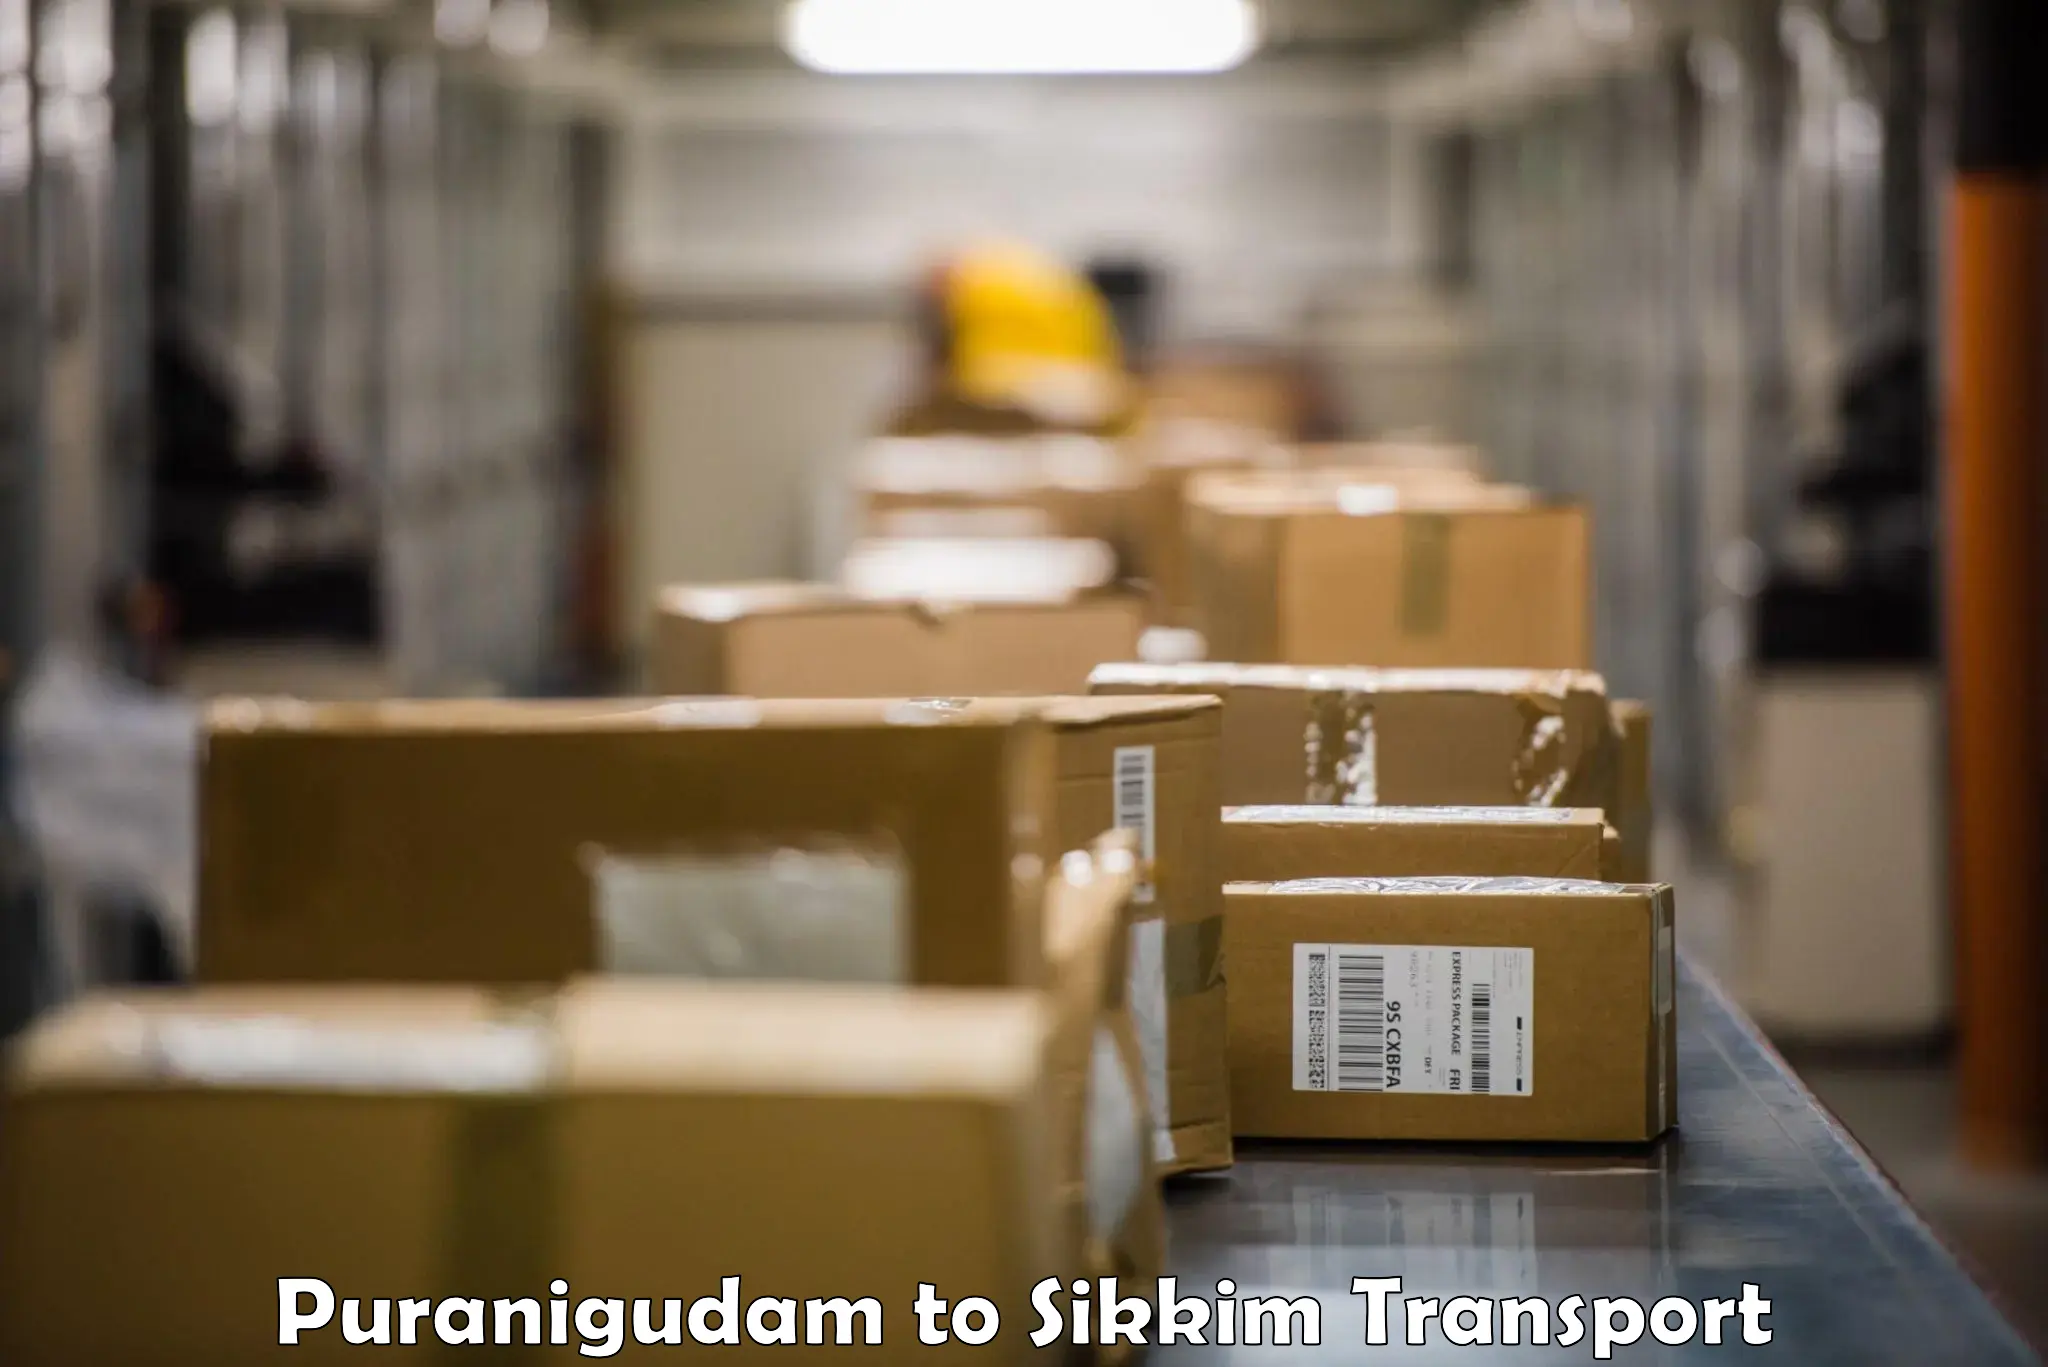 Cargo transportation services Puranigudam to Jorethang